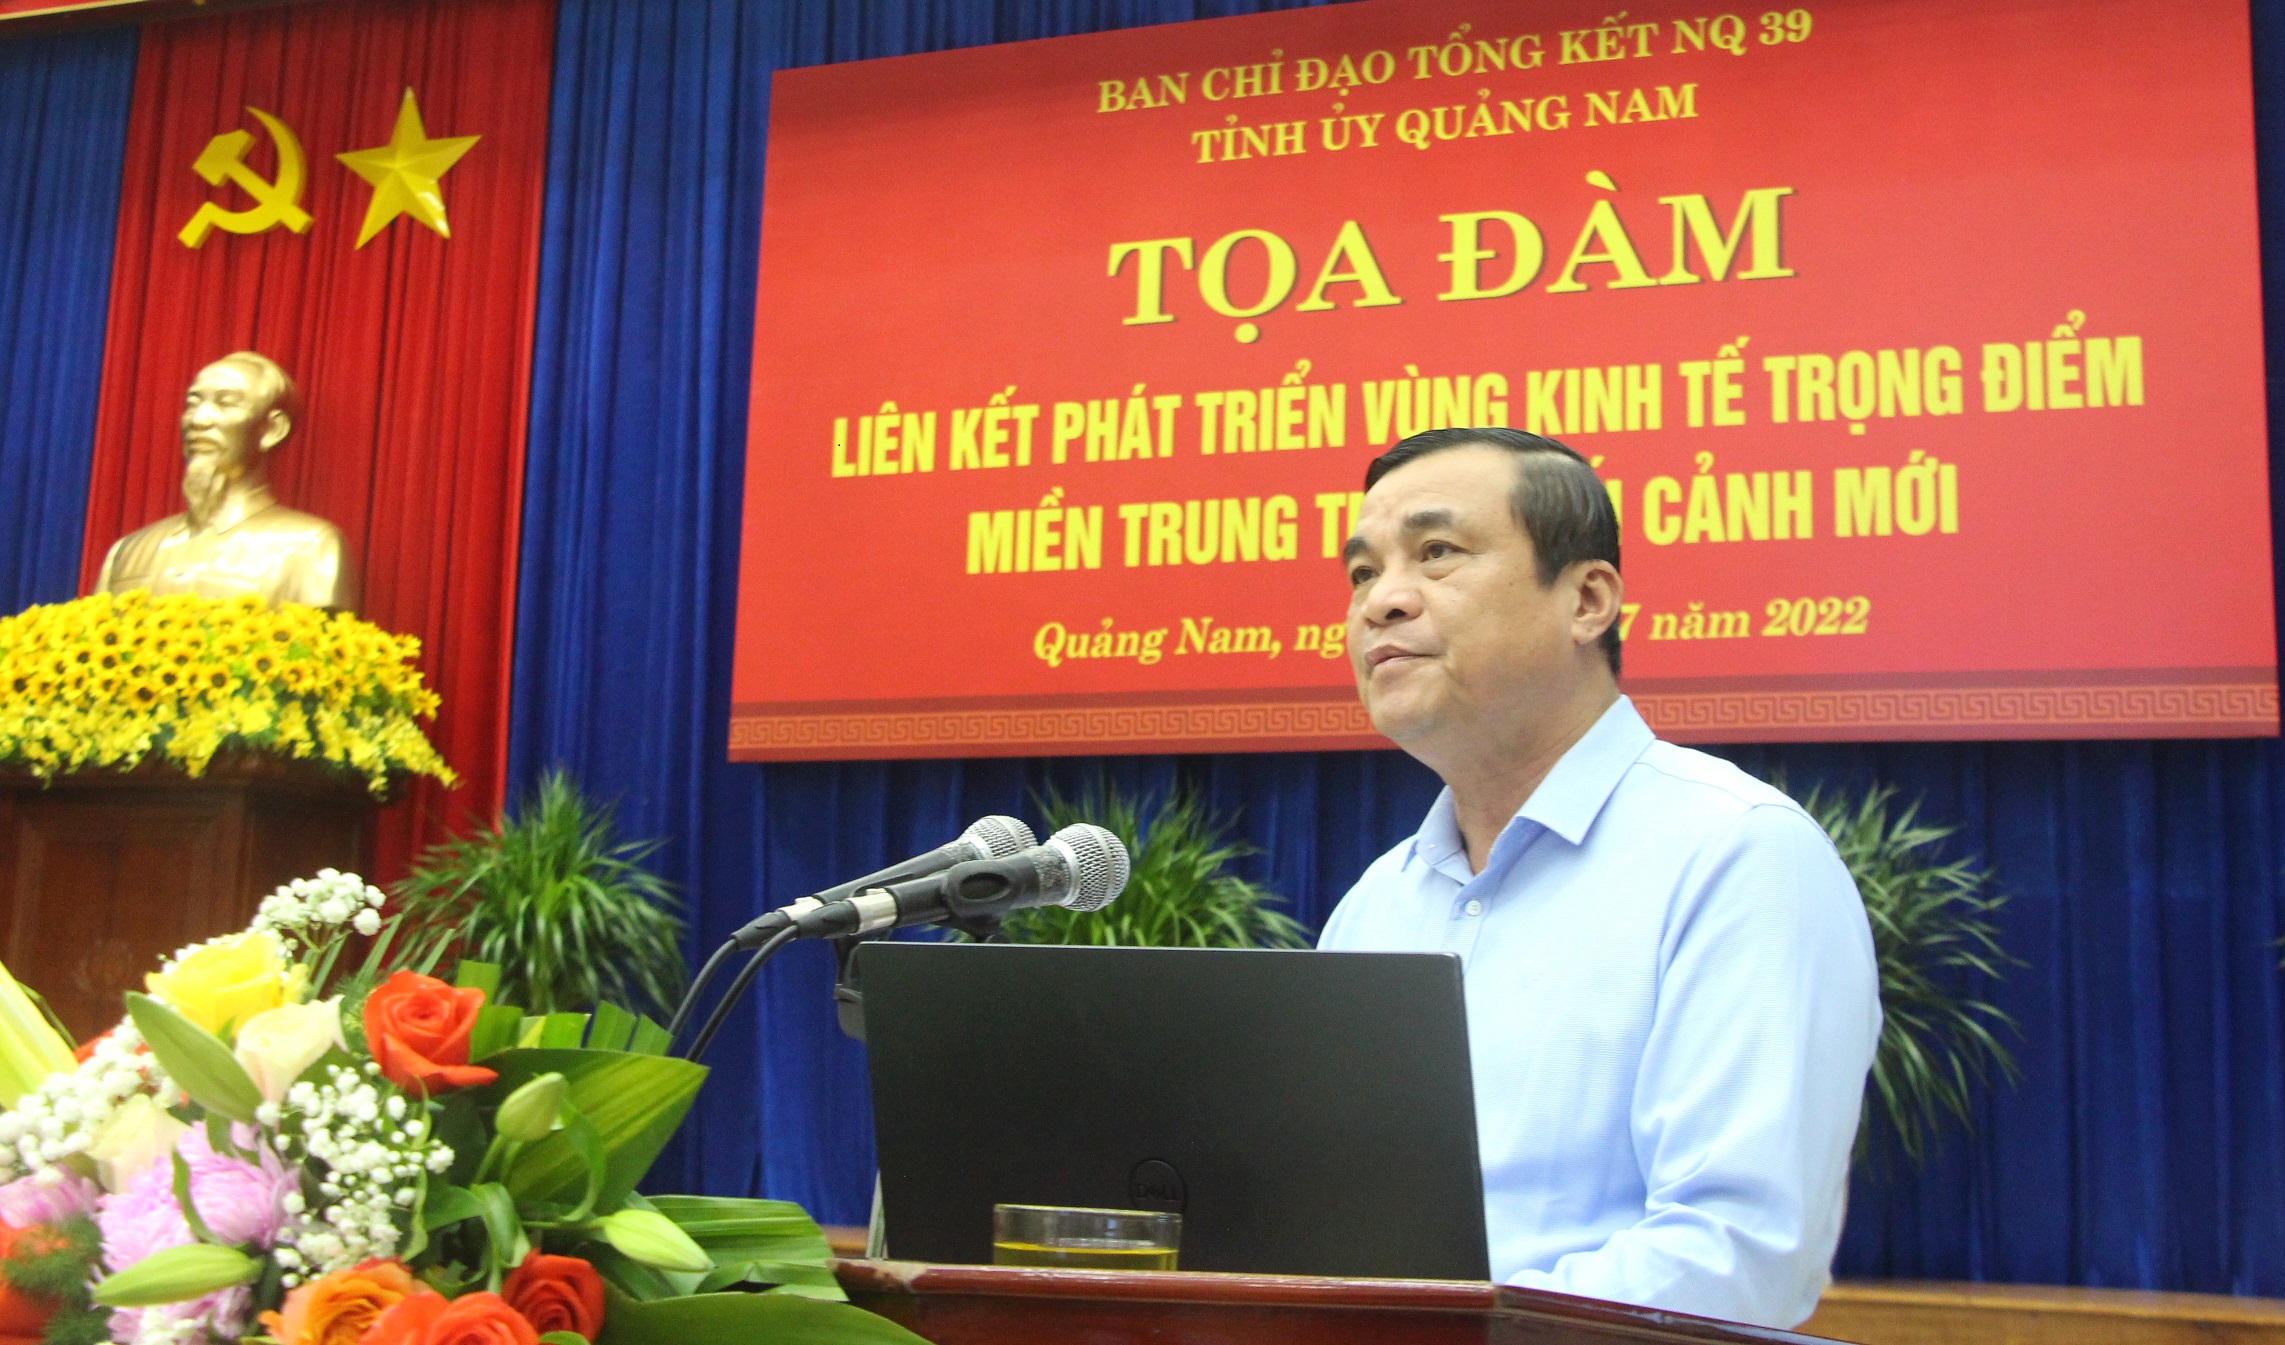 Ông Phan Việt Cường, Bí thư Tỉnh ủy Quảng Nam phát biểu khai mạc tọa đàm.